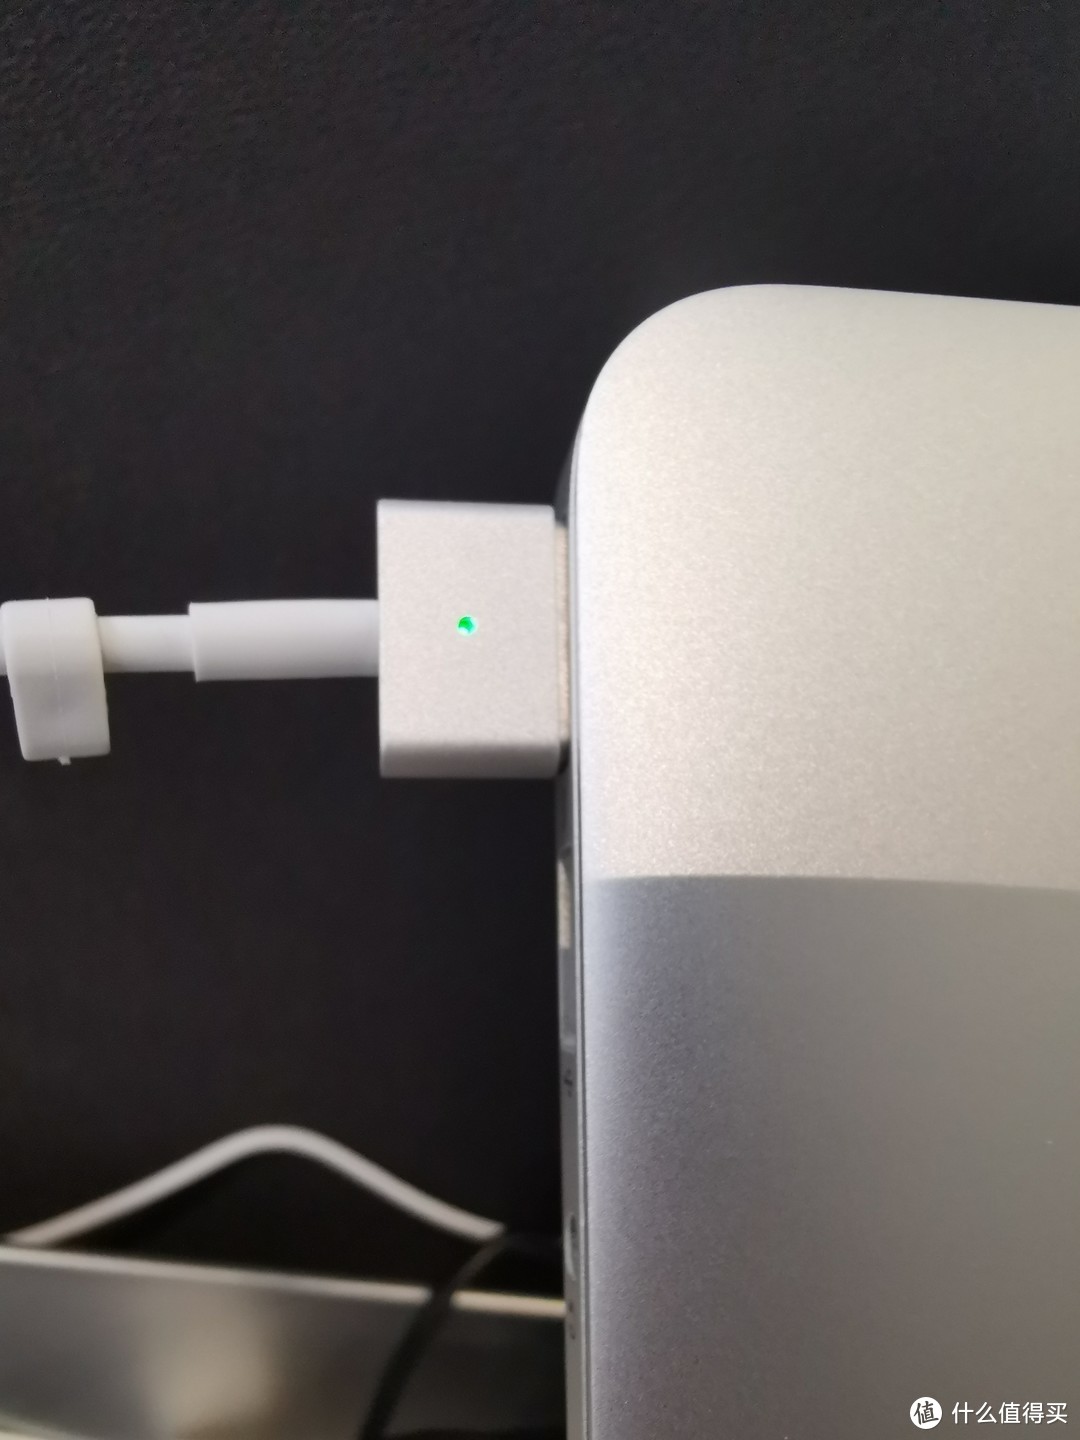 当年，Mac充电的时候还可以直接通过充电头来看电是否充满